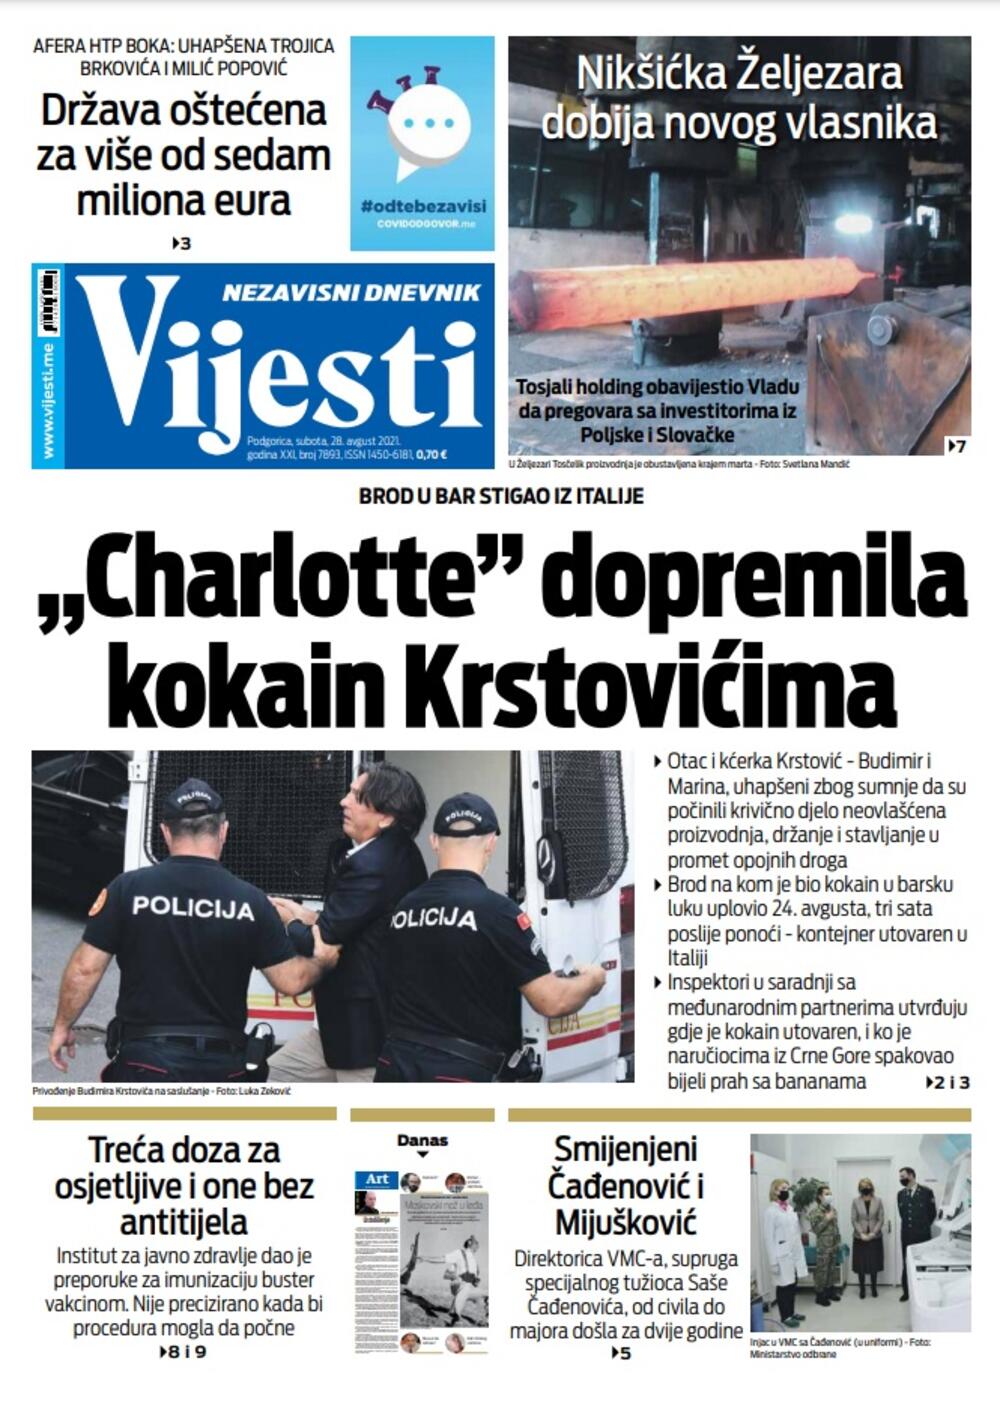 Naslovna strana "Vijesti" za 28. avgust 2021., Foto: Vijesti